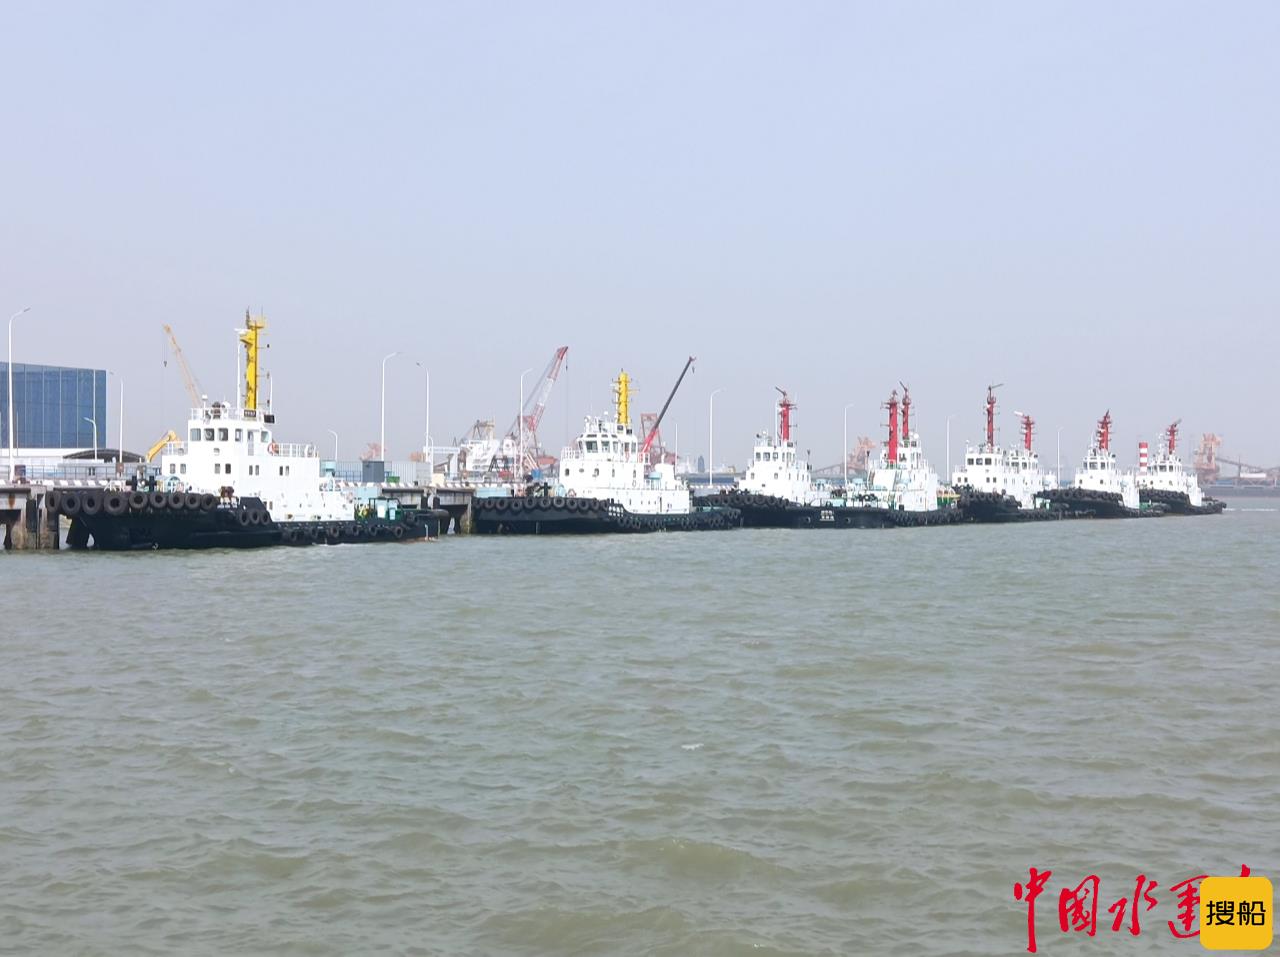 打造船舶污染防治“碧海长城” 河北黄骅港在渤海湾率先实现港作拖轮生活污水“零排放”